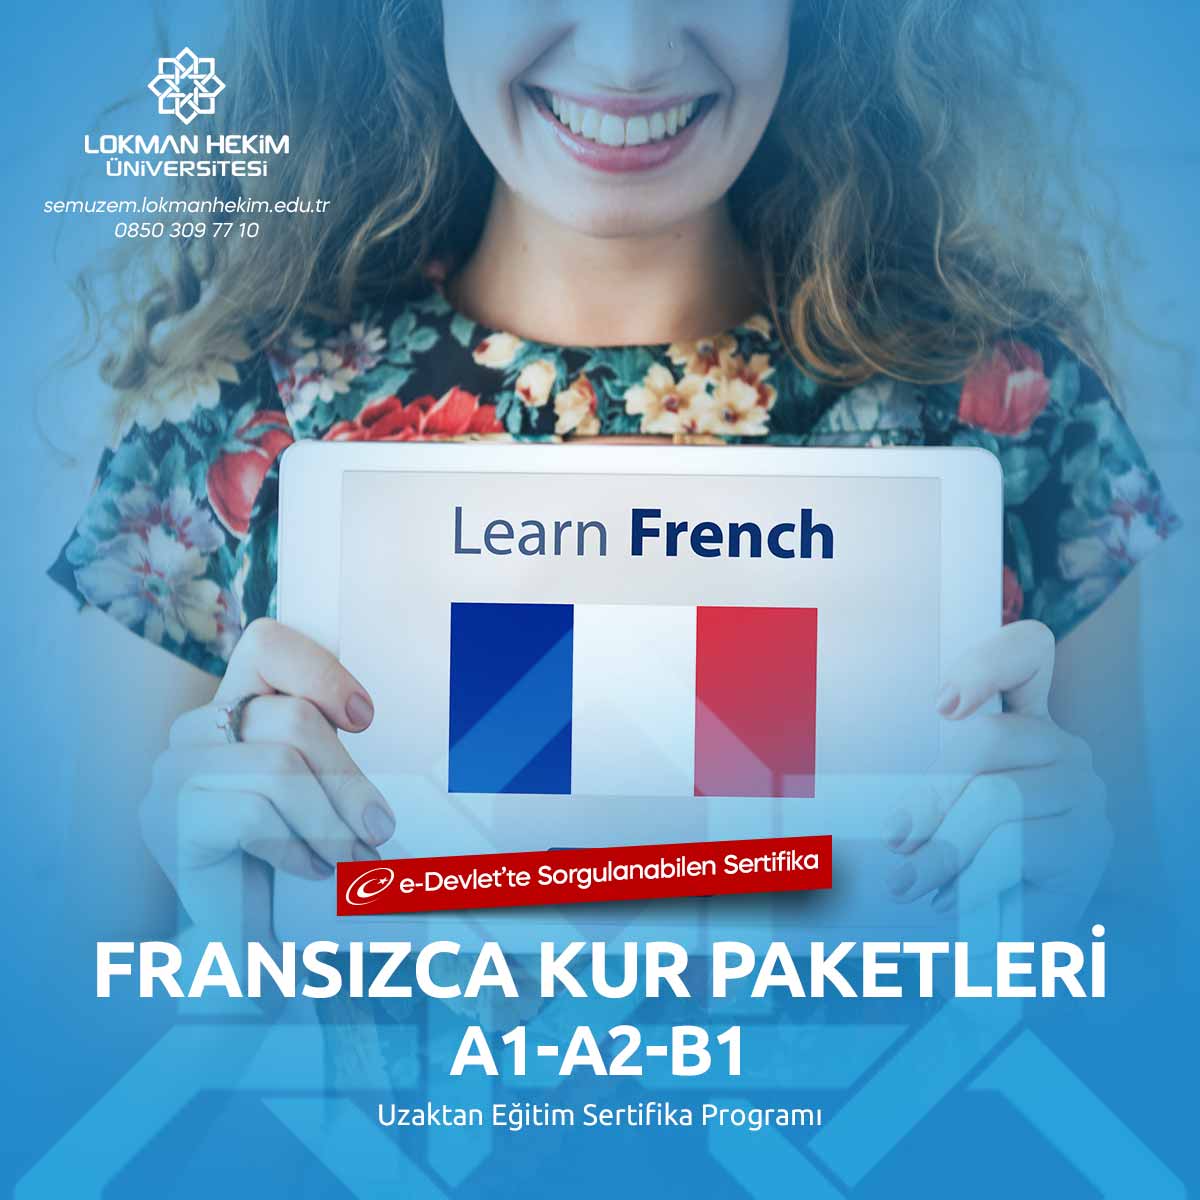 A2 Seviye Fransızca Sertifikası Nedir, Nasıl Alınır?